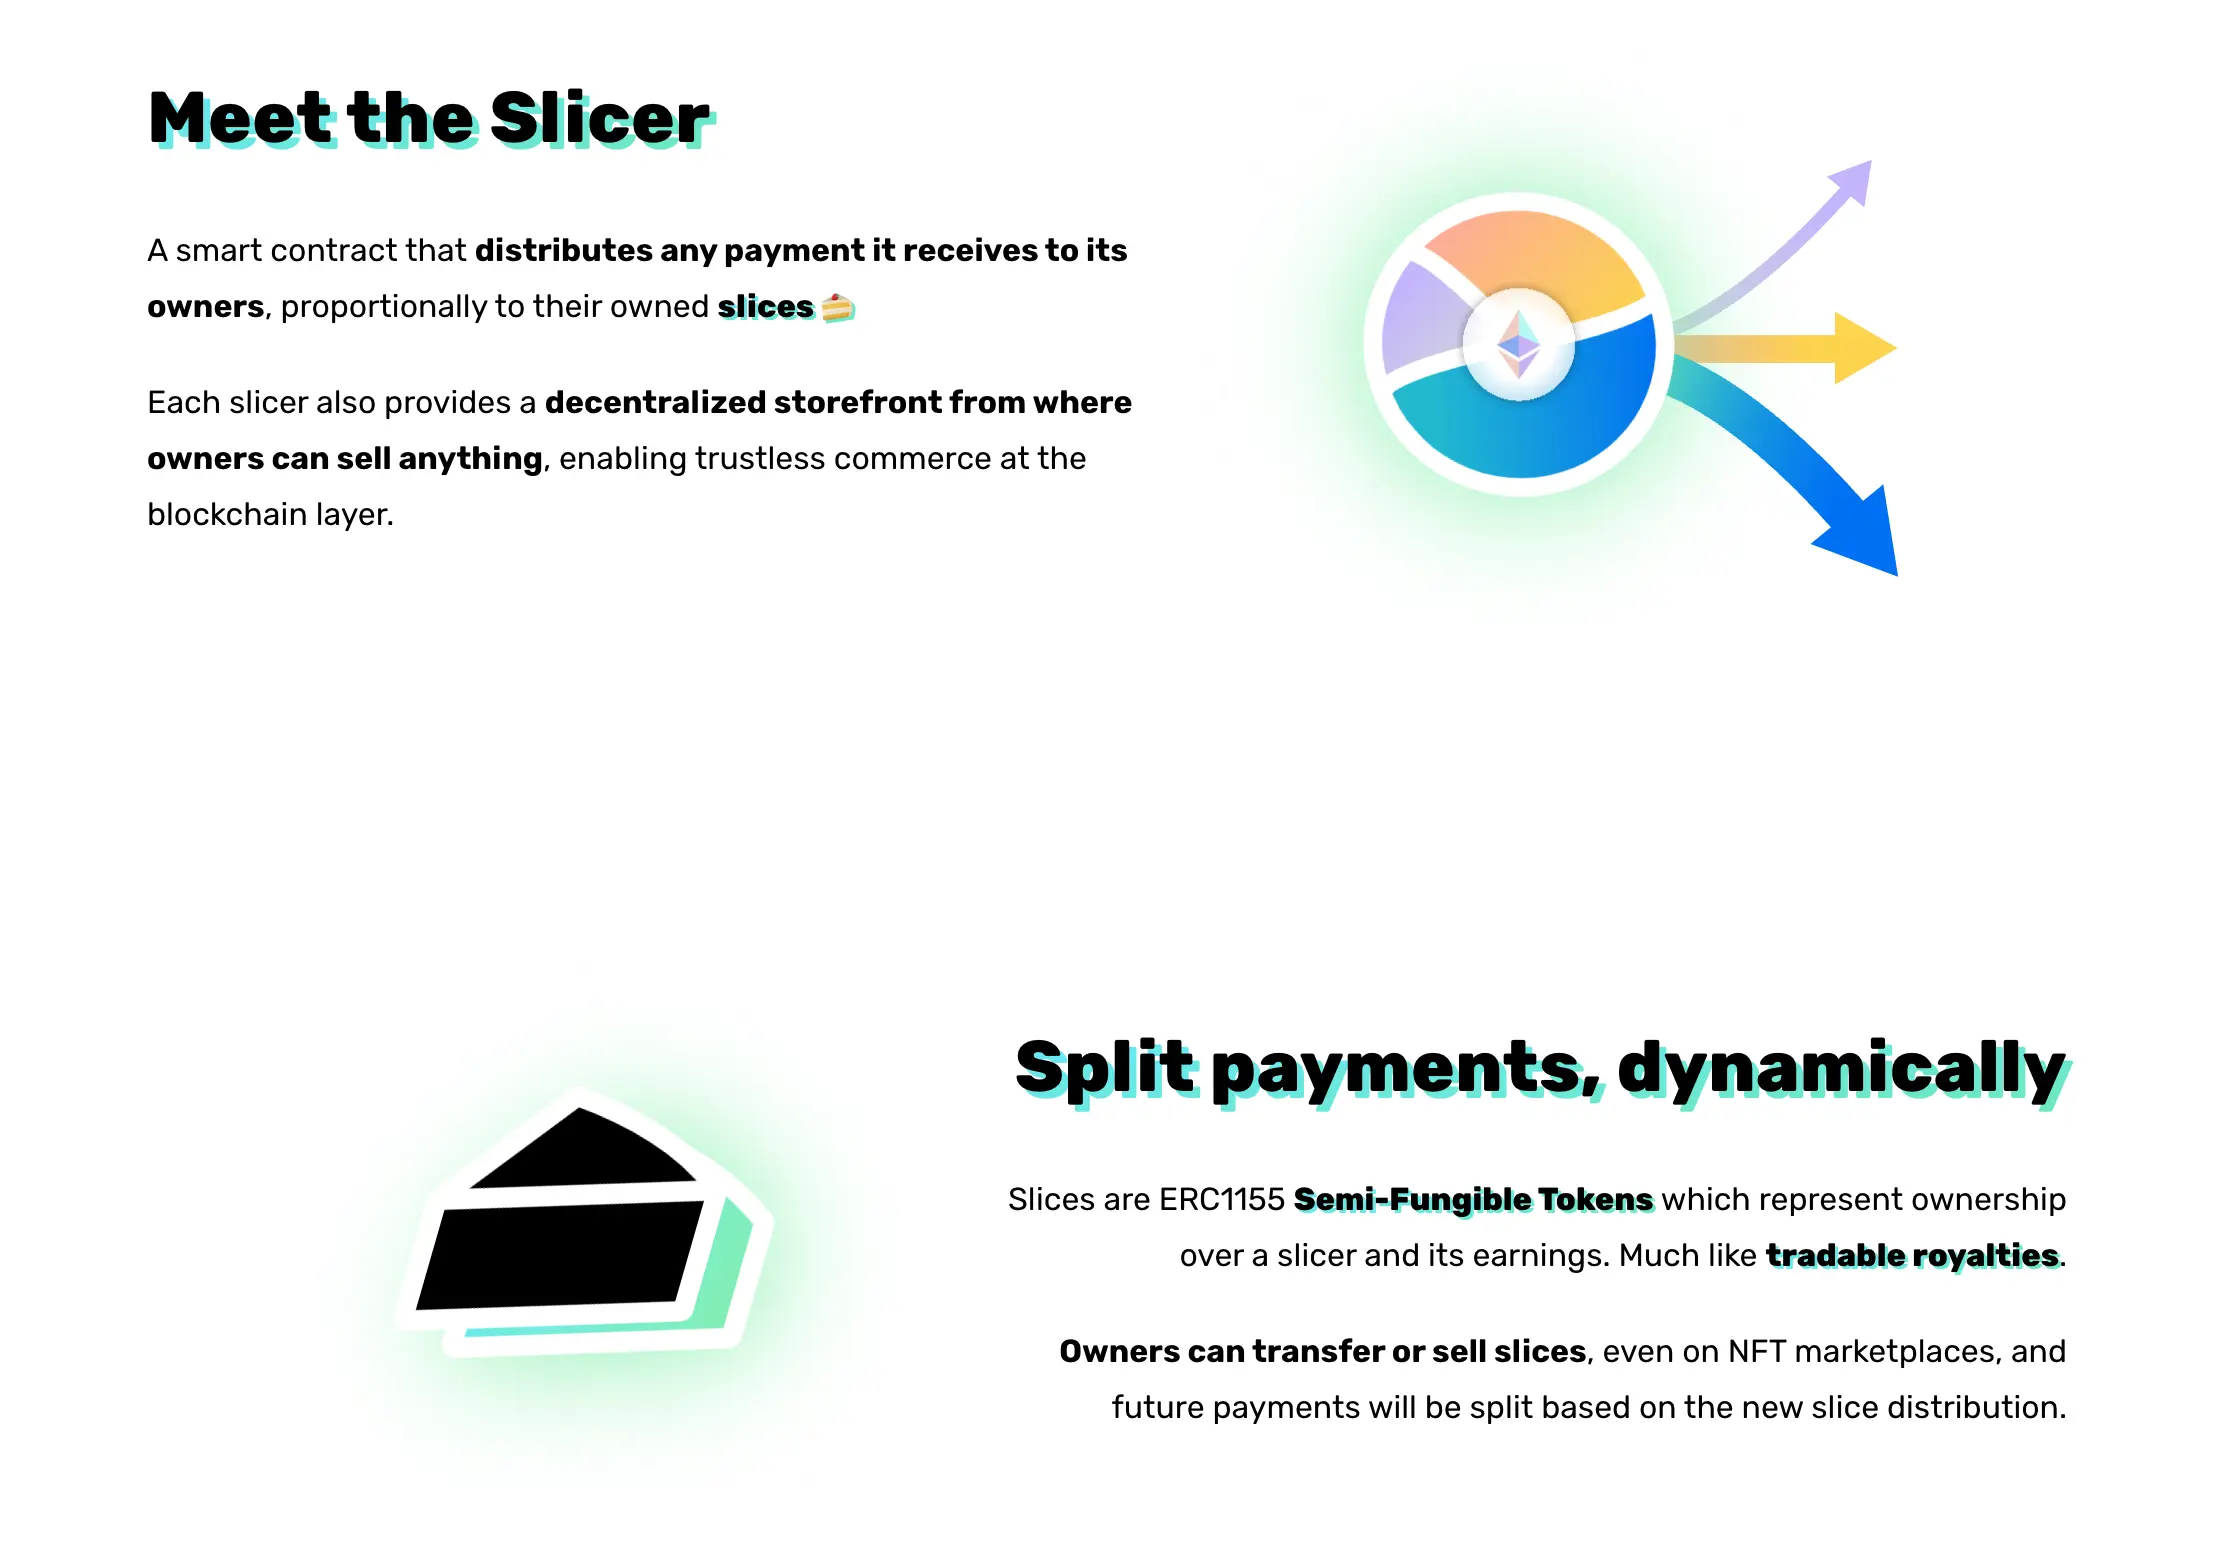 About slicer/slice